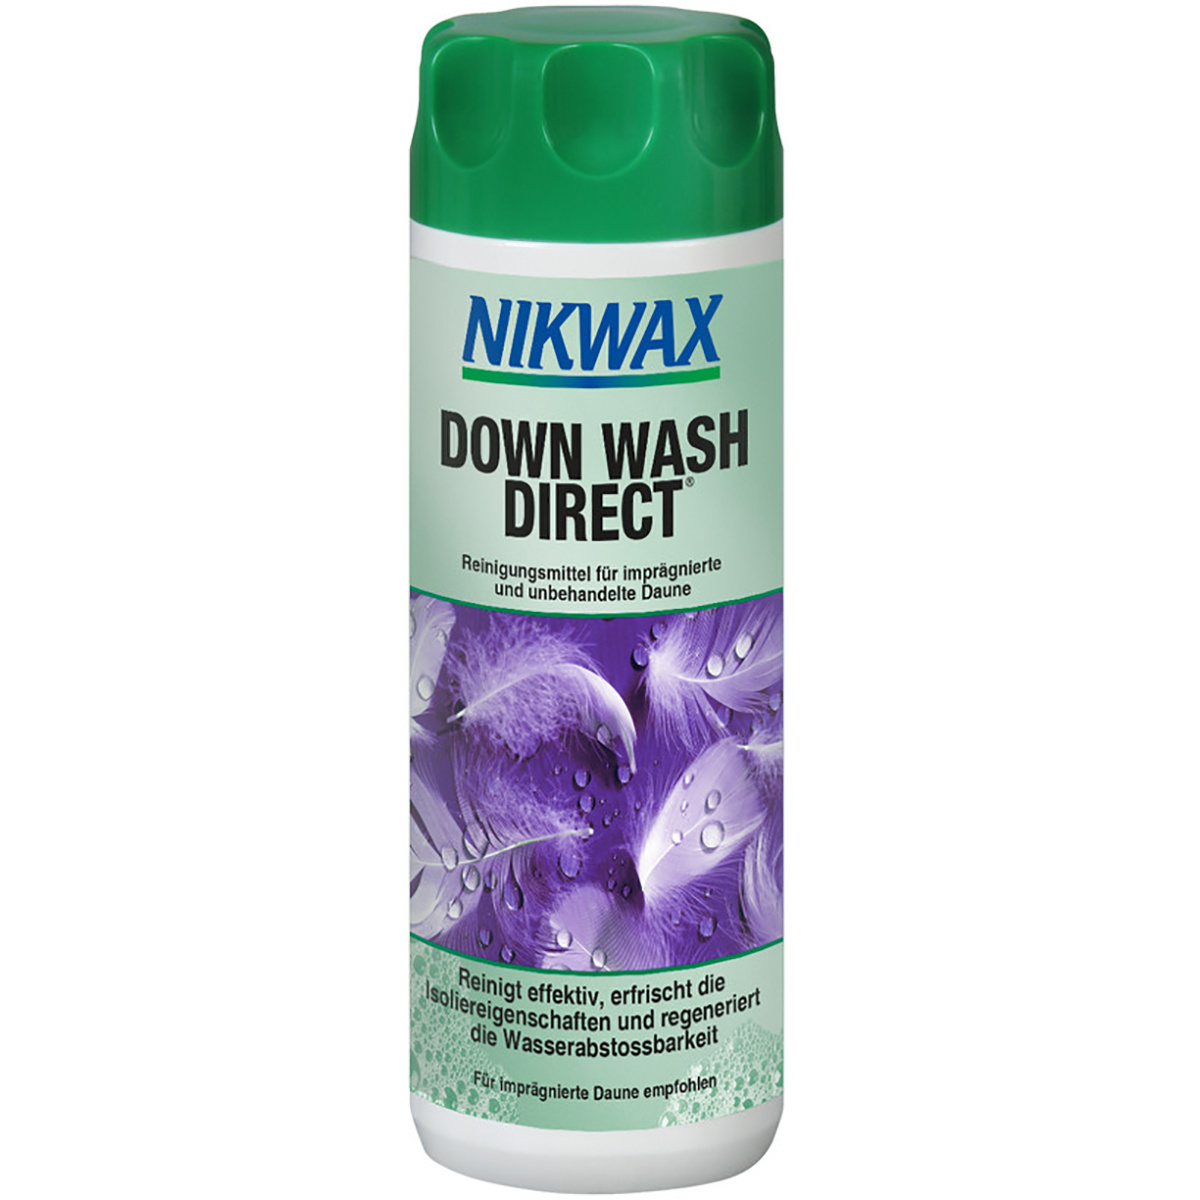 Image of Nikwax Prodotto per la pulizia Down Wash Direct